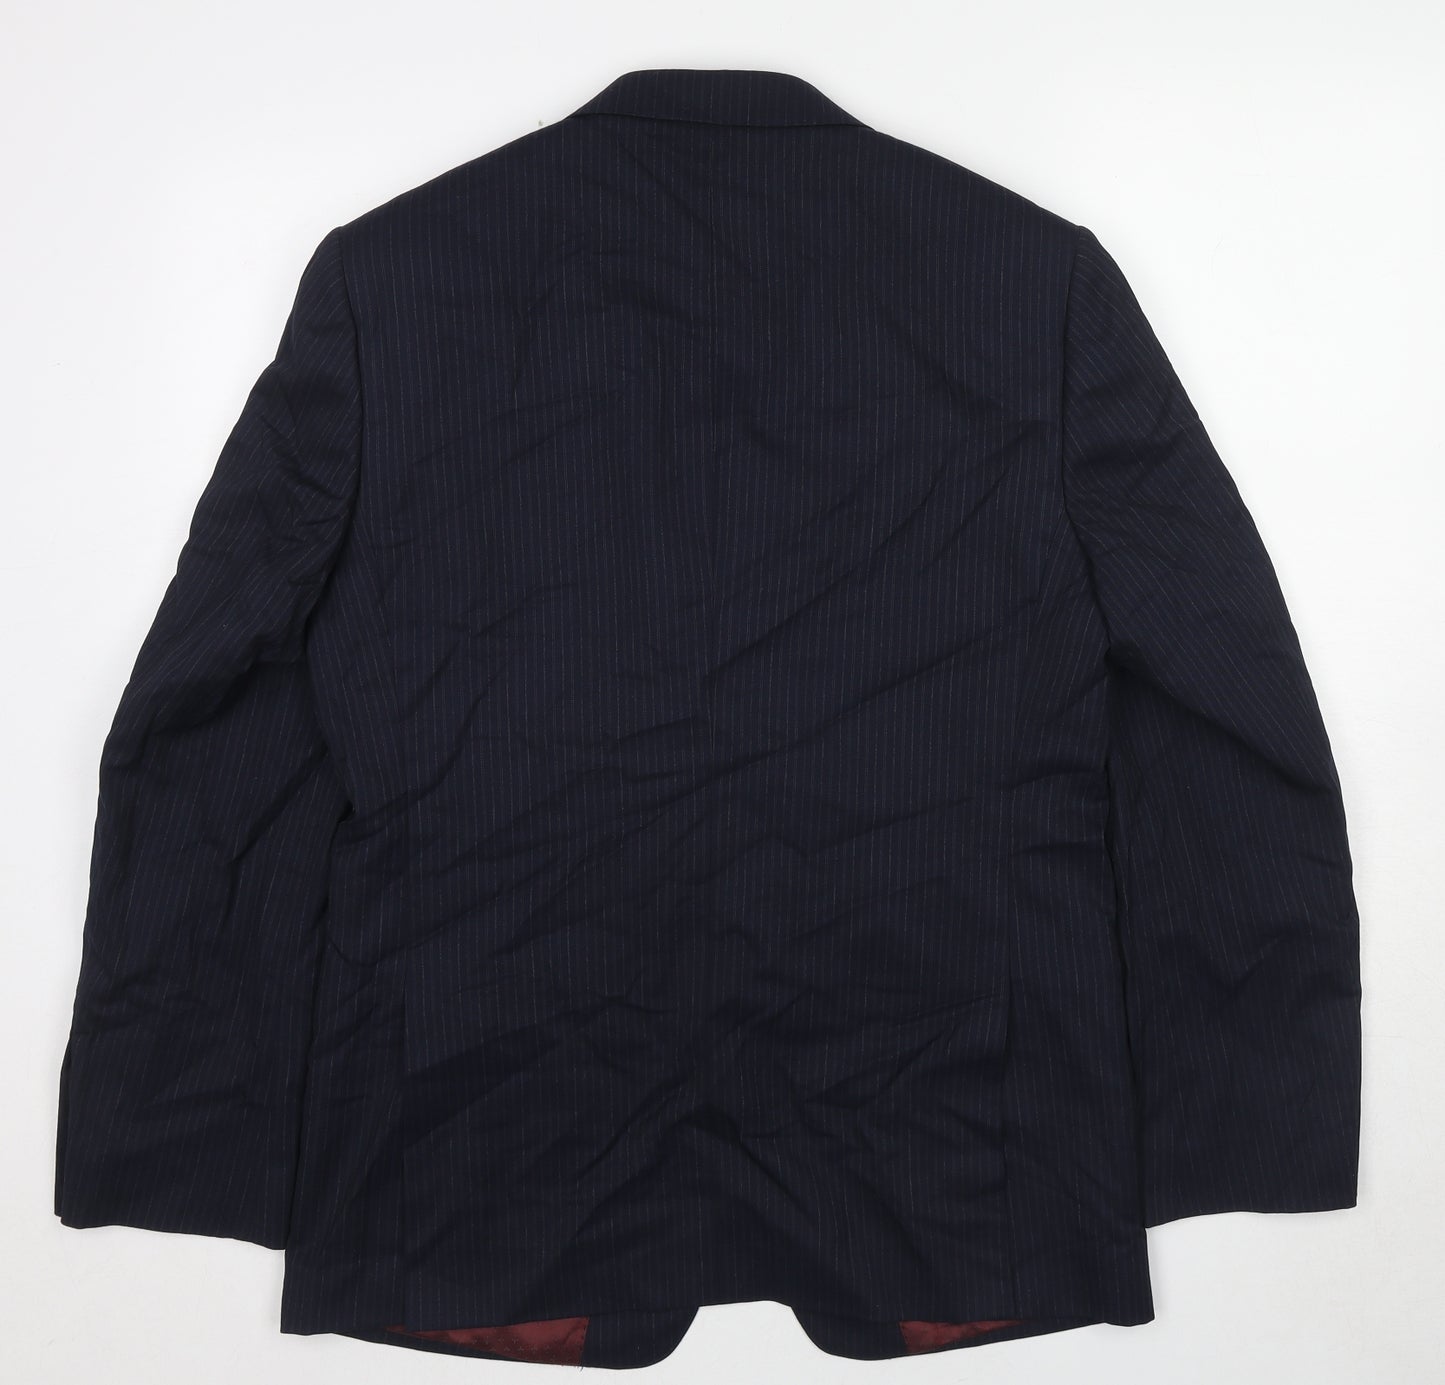 Marks and Spencer Mens Blue Striped Wool Jacket Suit Jacket Size 38 Regular